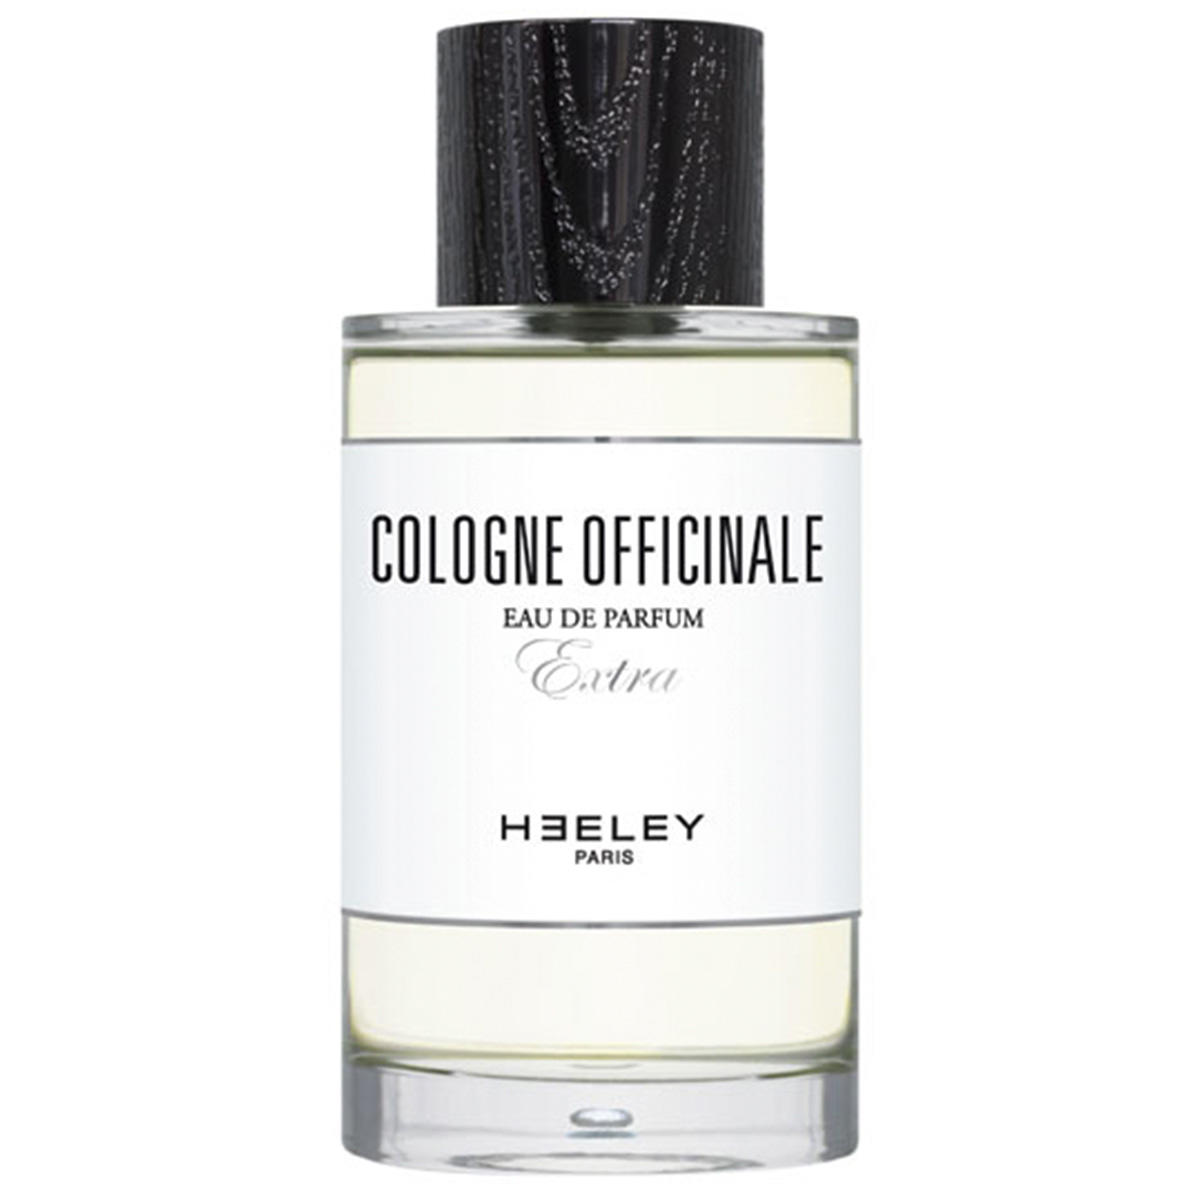 HEELEY Cologne Officinale Eau de Parfum 100 ml - 1